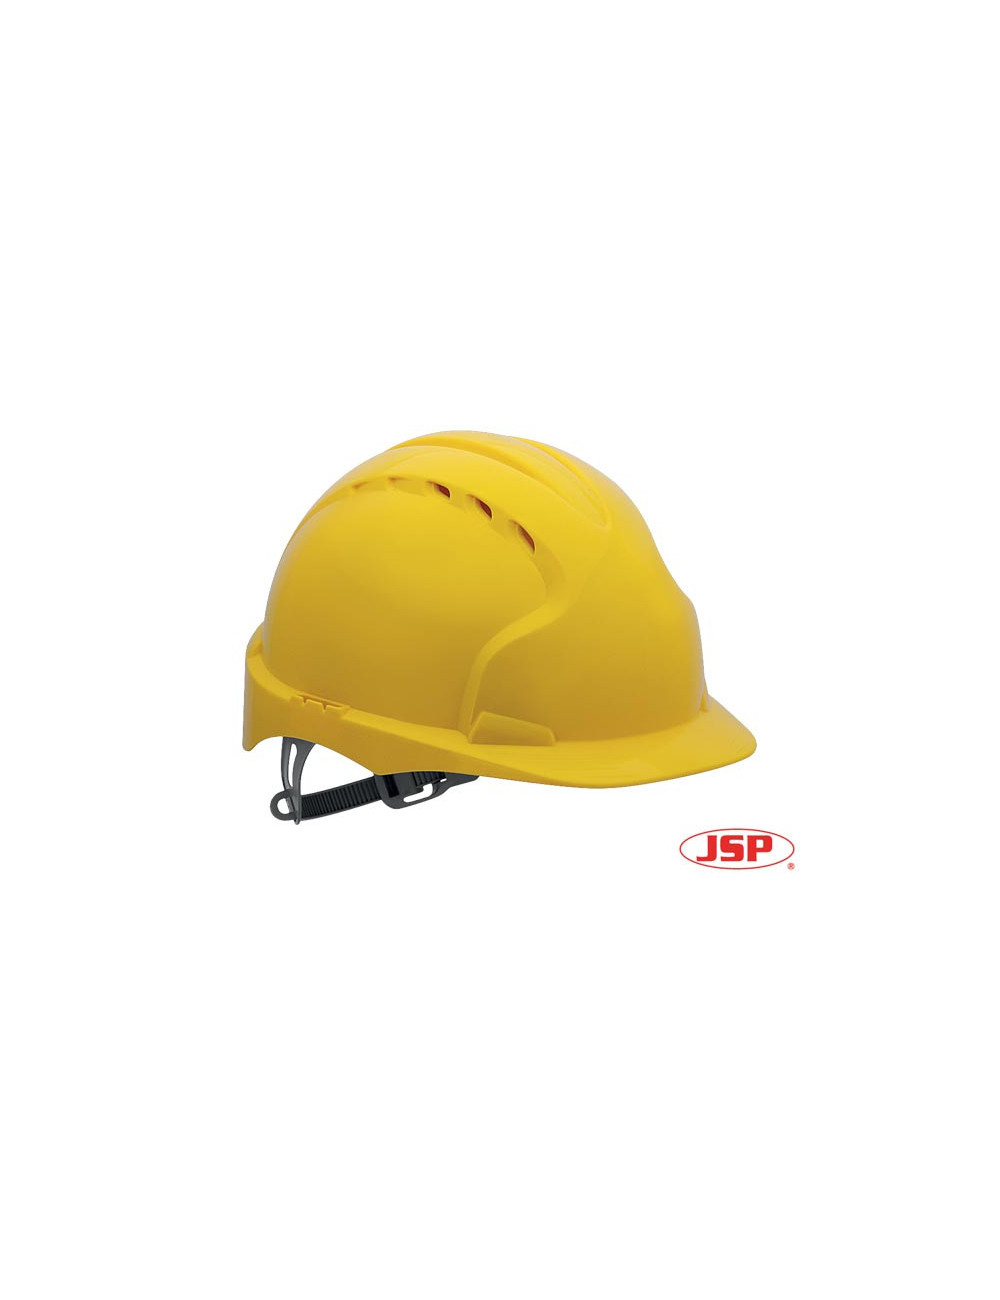 Protective helmet kas-evo2 y yellow Jsp